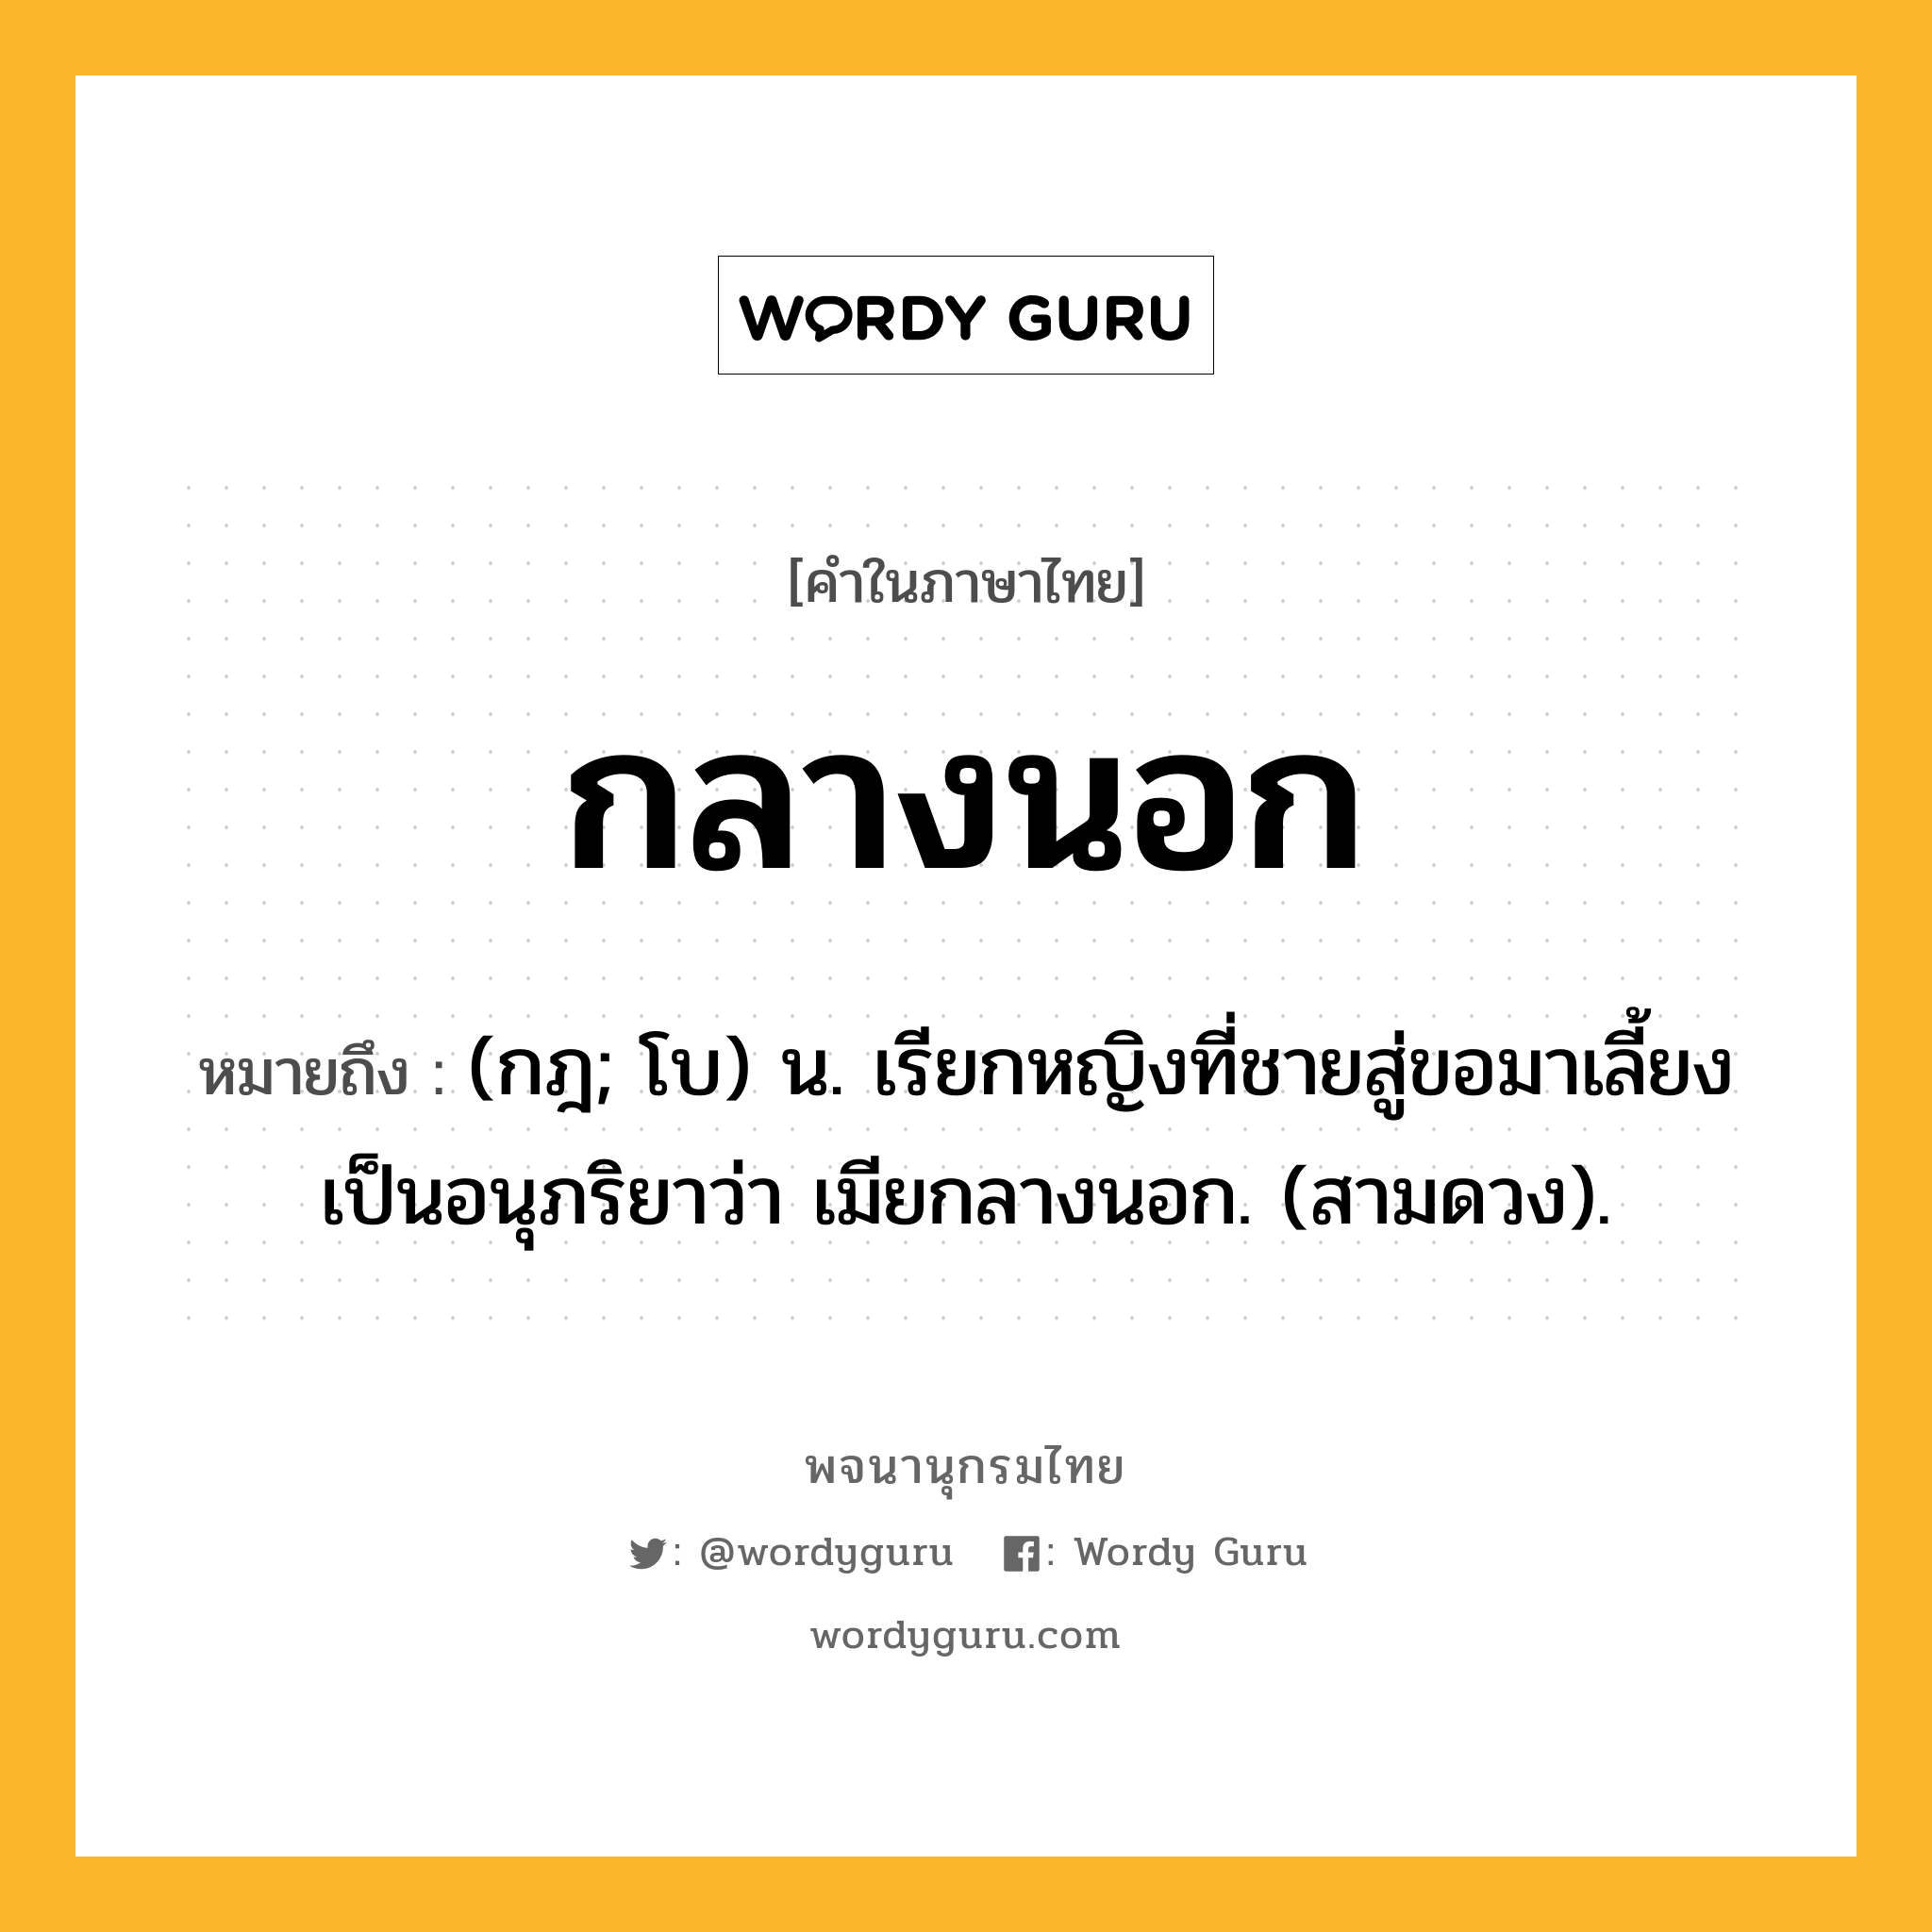 กลางนอก ความหมาย หมายถึงอะไร?, คำในภาษาไทย กลางนอก หมายถึง (กฎ; โบ) น. เรียกหญิงที่ชายสู่ขอมาเลี้ยงเป็นอนุภริยาว่า เมียกลางนอก. (สามดวง).